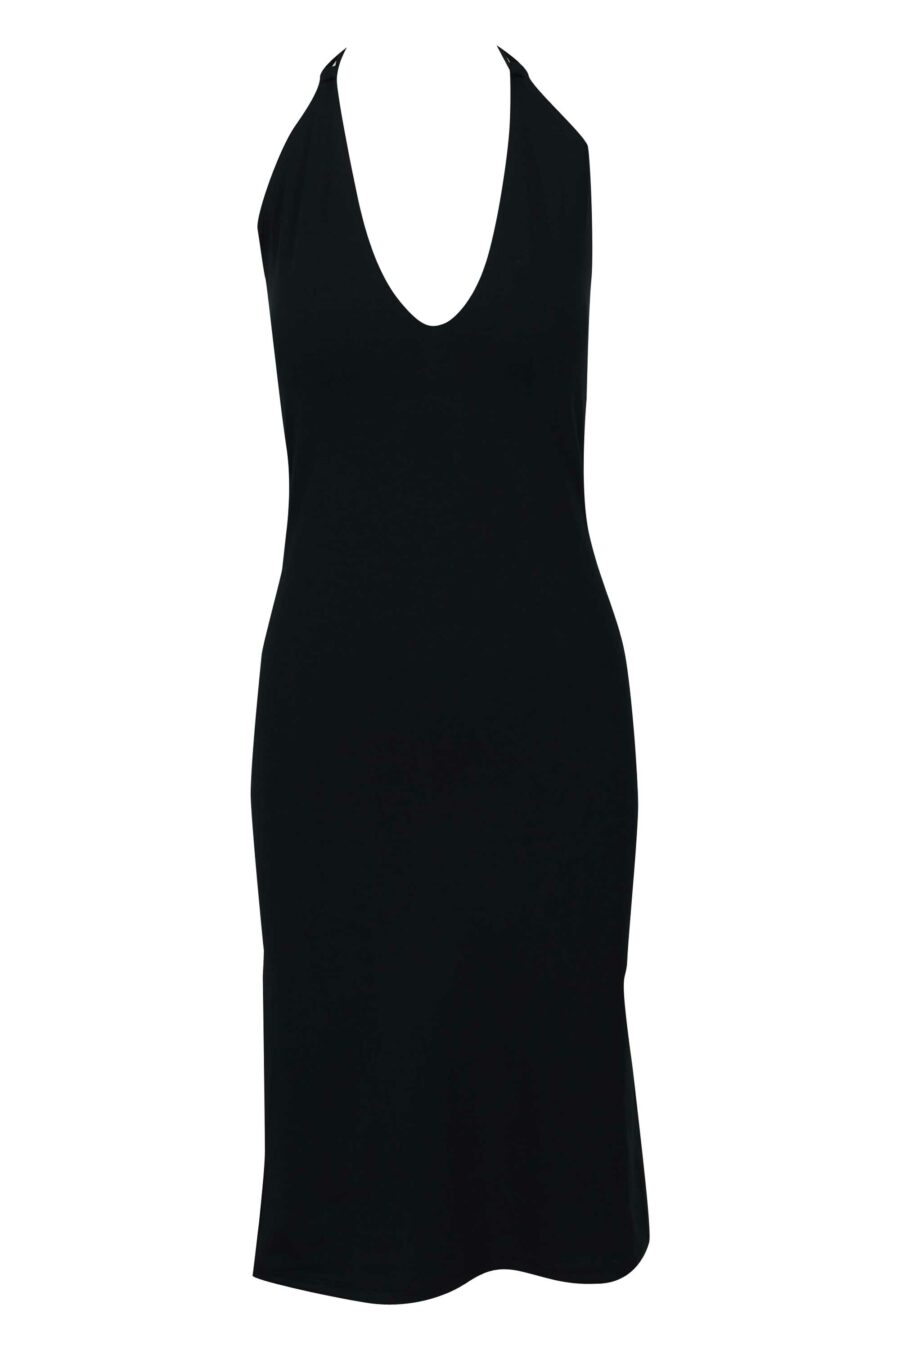 Langes schwarzes Kleid mit Ausschnitt und Mini-Logo - 667113355931